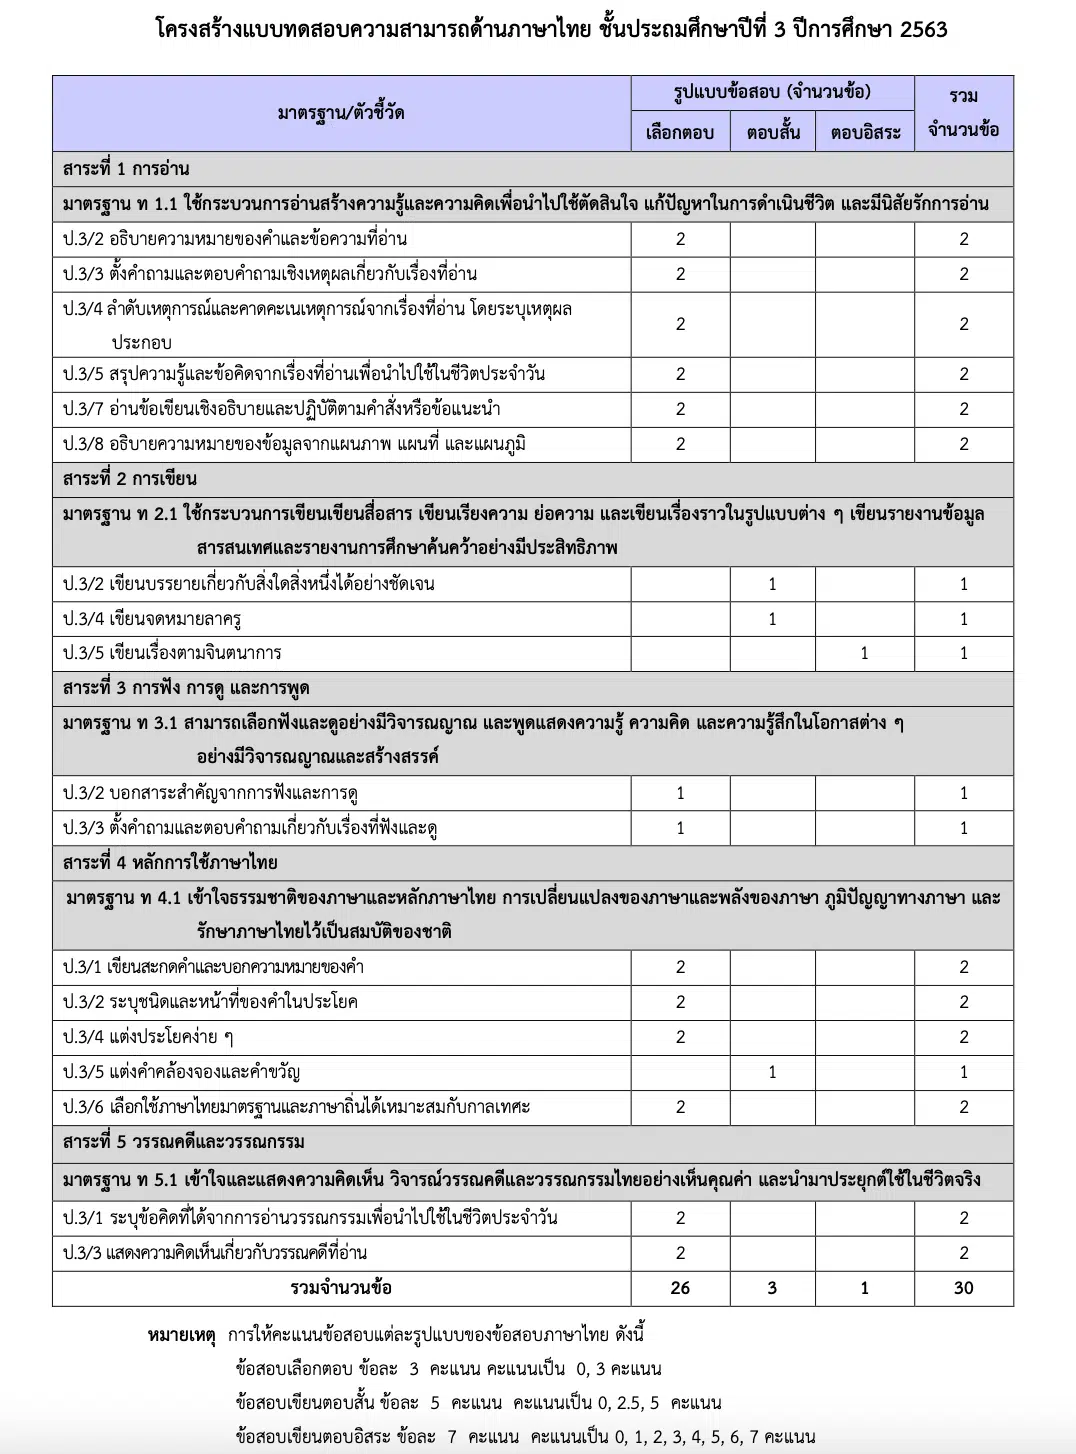 โครงสร้างแบบทดสอบความสามารถด้านภาษาไทย ชั้นประถมศึกษาปีที่ 3 ปีการศึกษา 2563